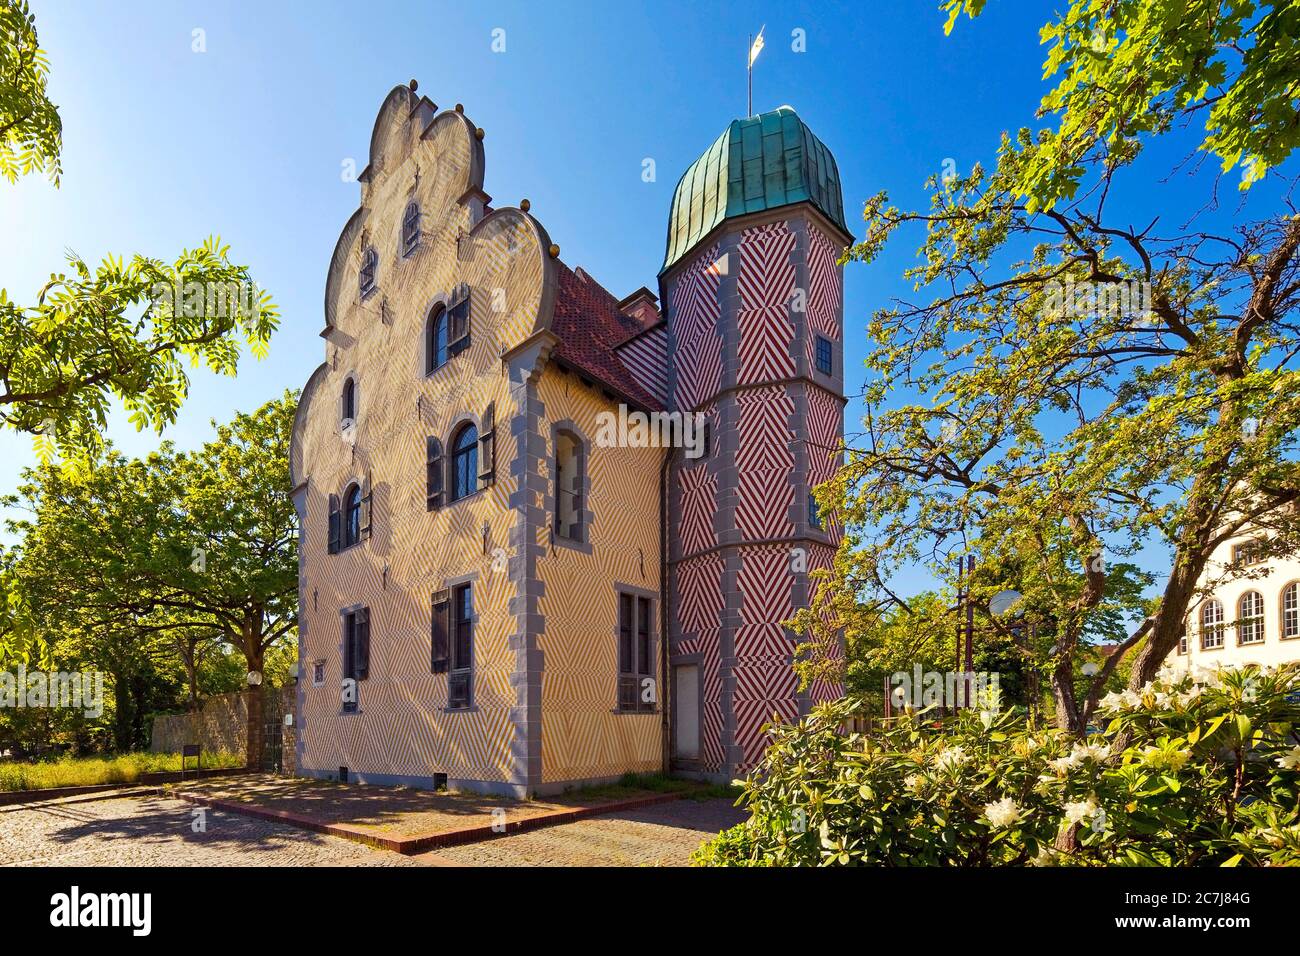 Ledenhof, antigua casa de pueblo, hoy lugar de la Fundación Alemana para la Investigación de la Paz, palas con torre de escalera, Alemania, Baja Sajonia, Osnabrueck Foto de stock